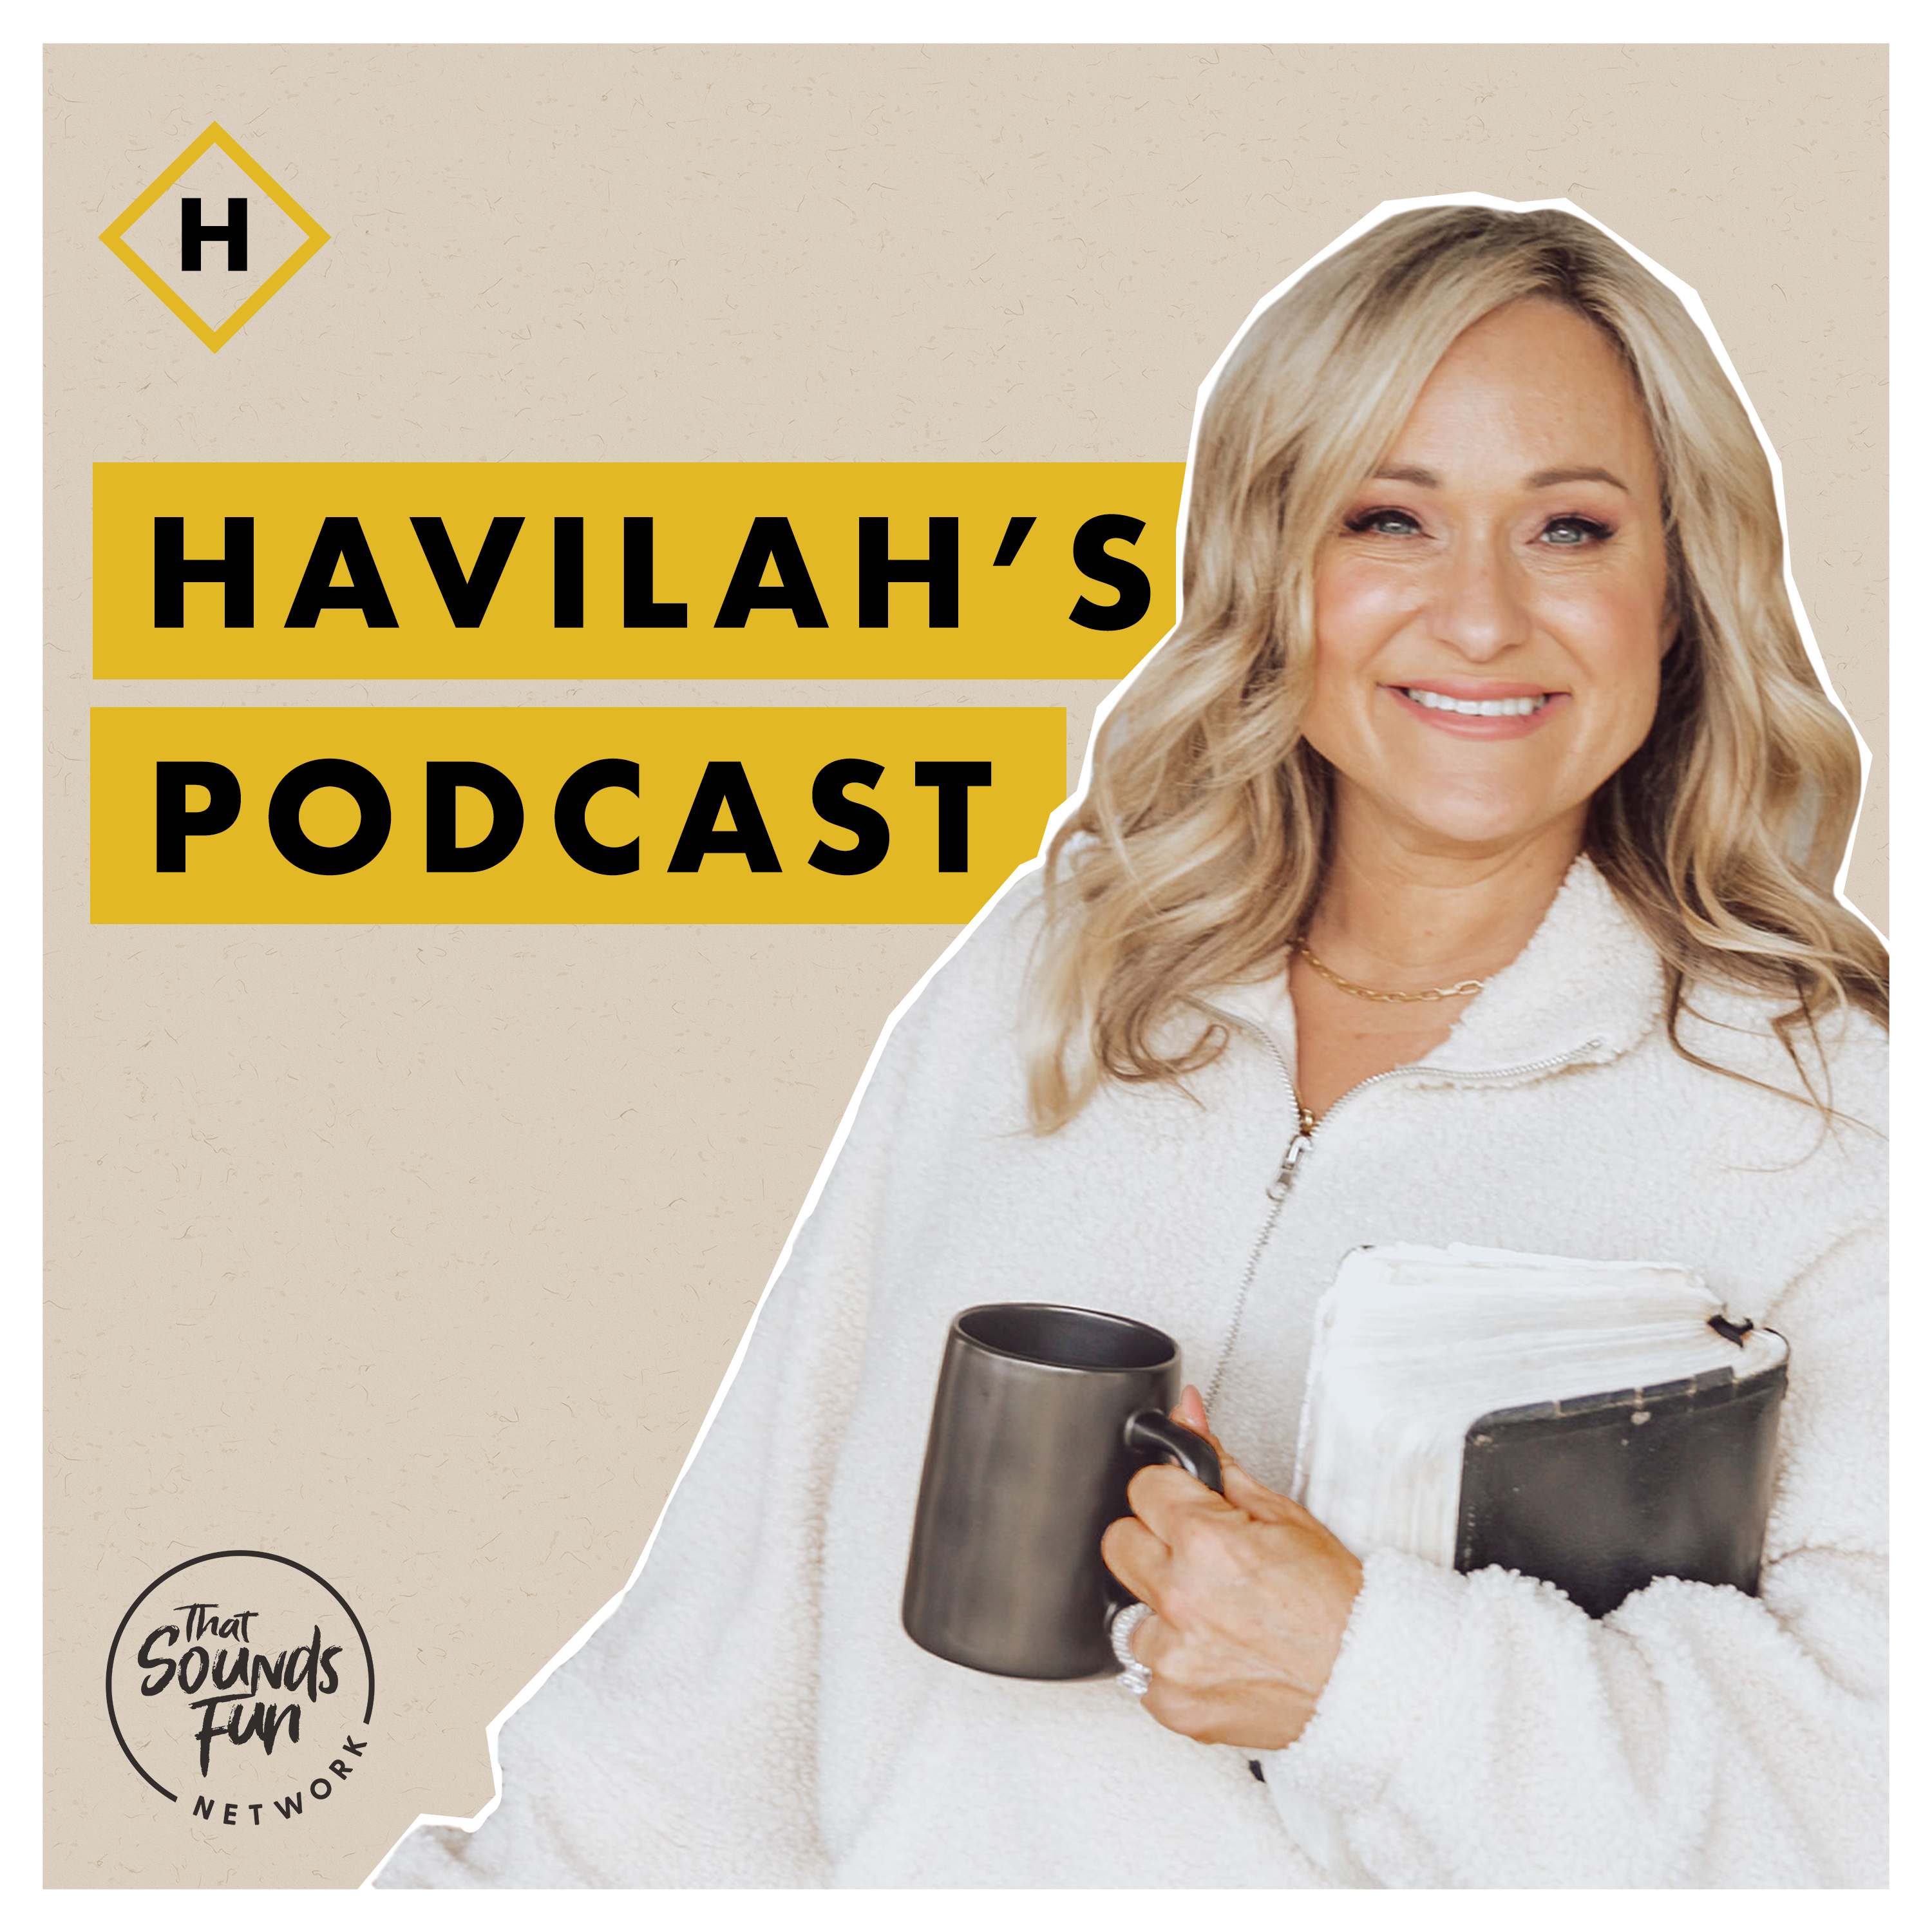 Havilah’s Podcast